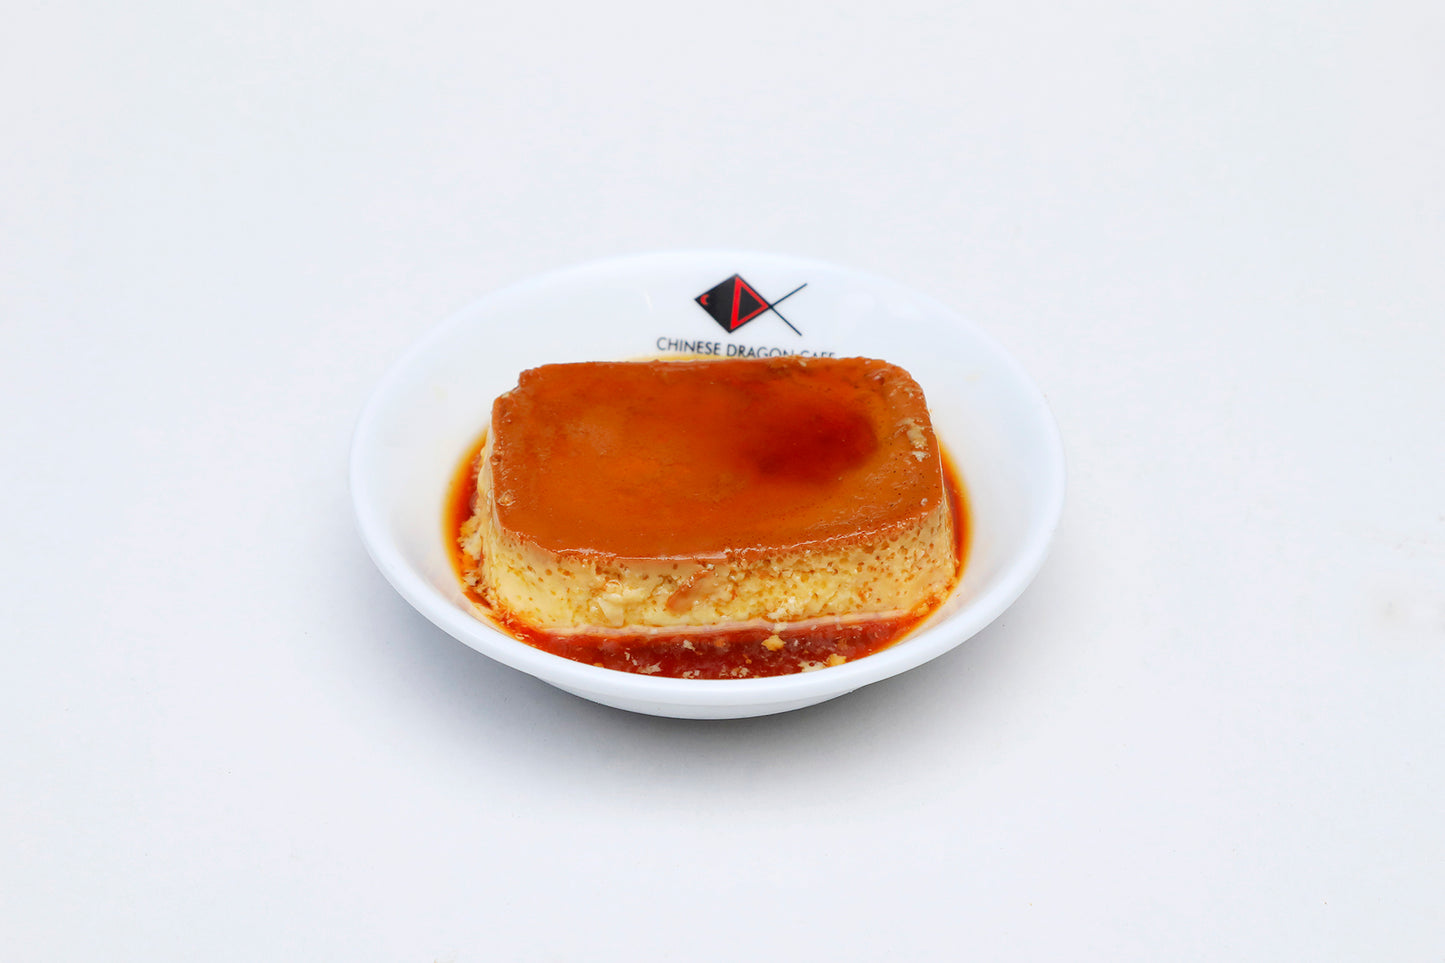 Caramel Pudding